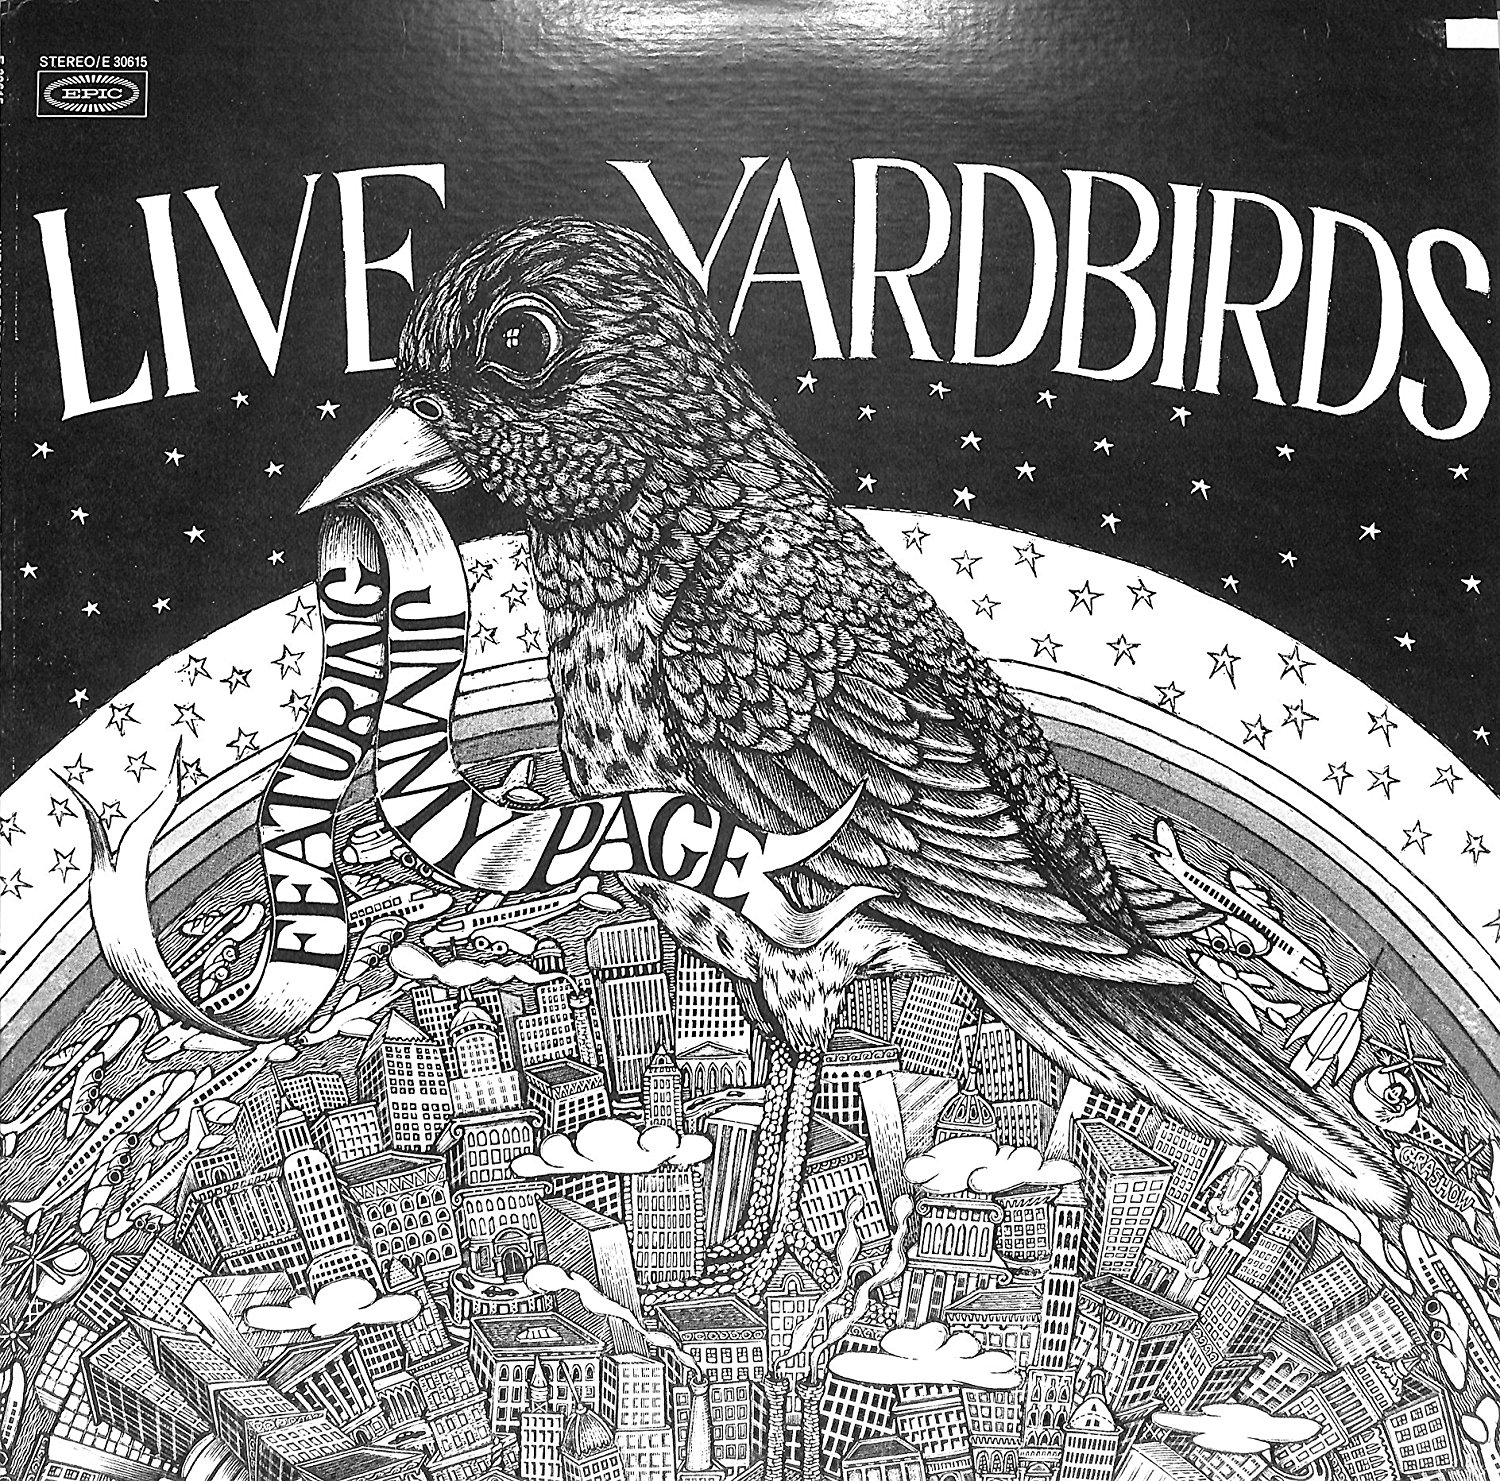 Yardbirds_Live Yardbirds